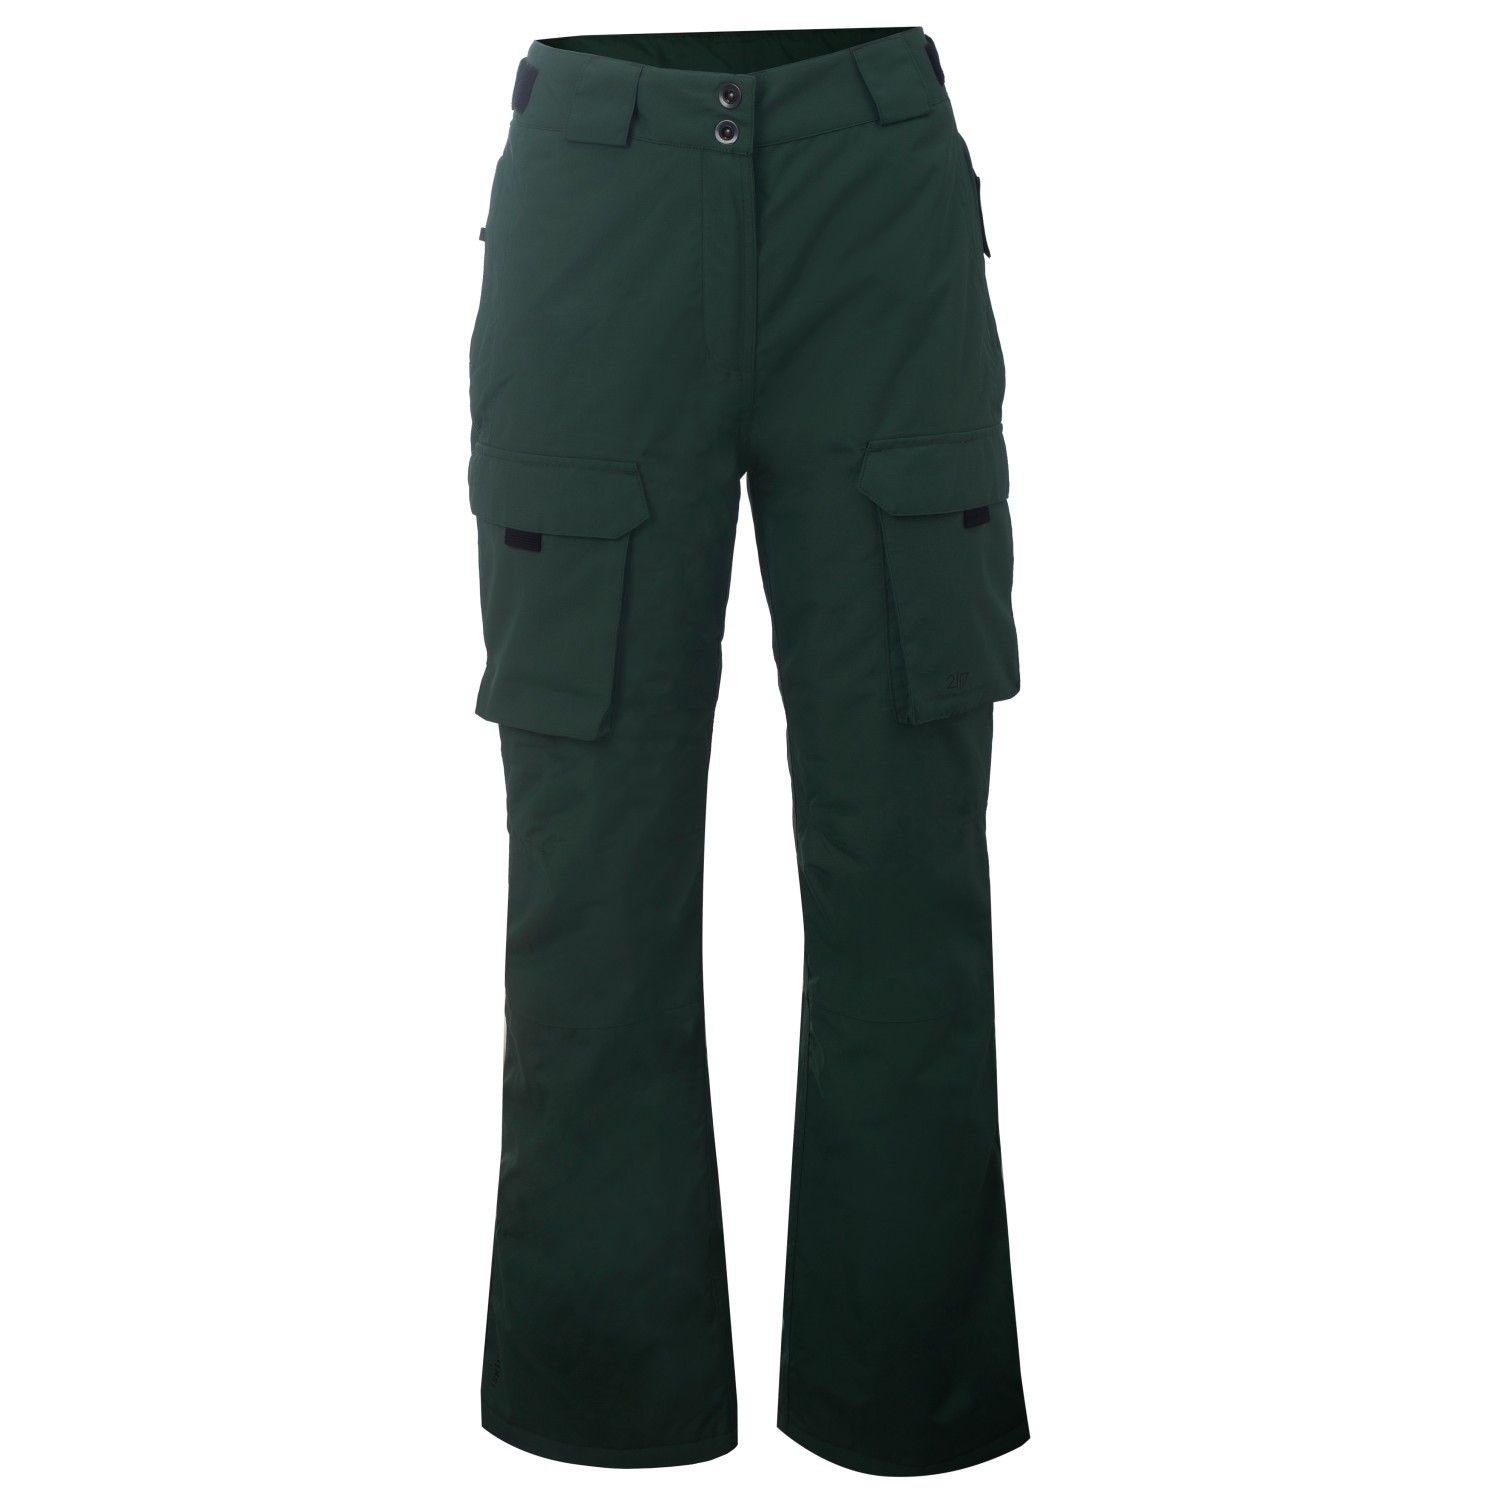 Лыжные штаны 2117 Of Sweden Women's Myre Pant, цвет Forest Green